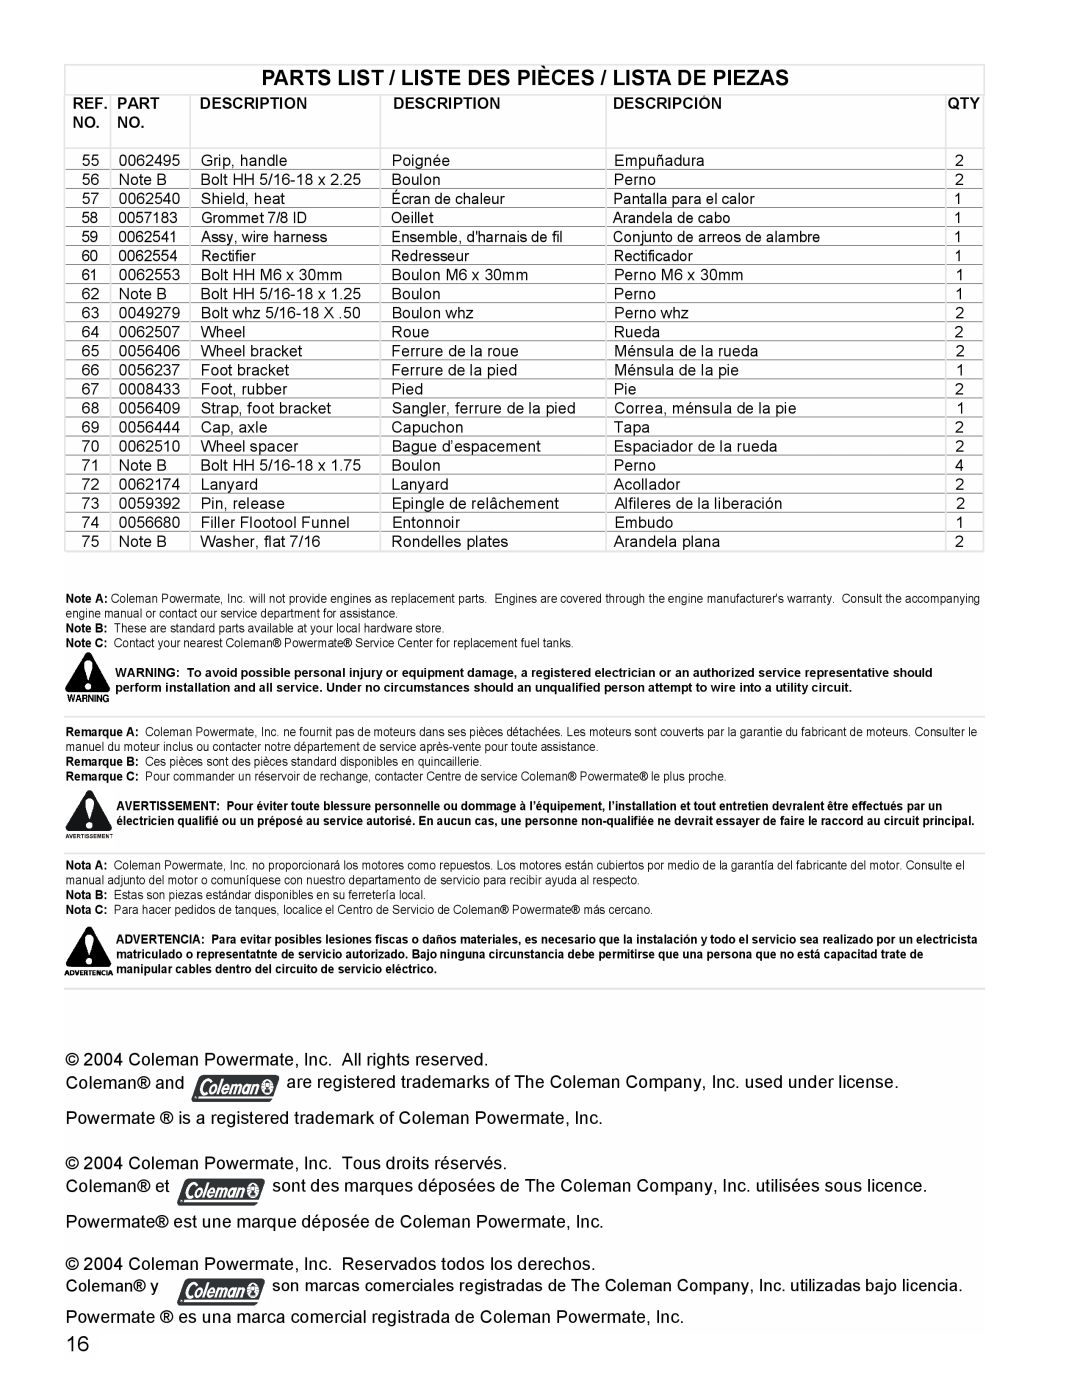 Coleman PM0601100 Parts List / Liste Des Pièces / Lista De Piezas, Coleman Powermate, Inc. All rights reserved, Coleman y 